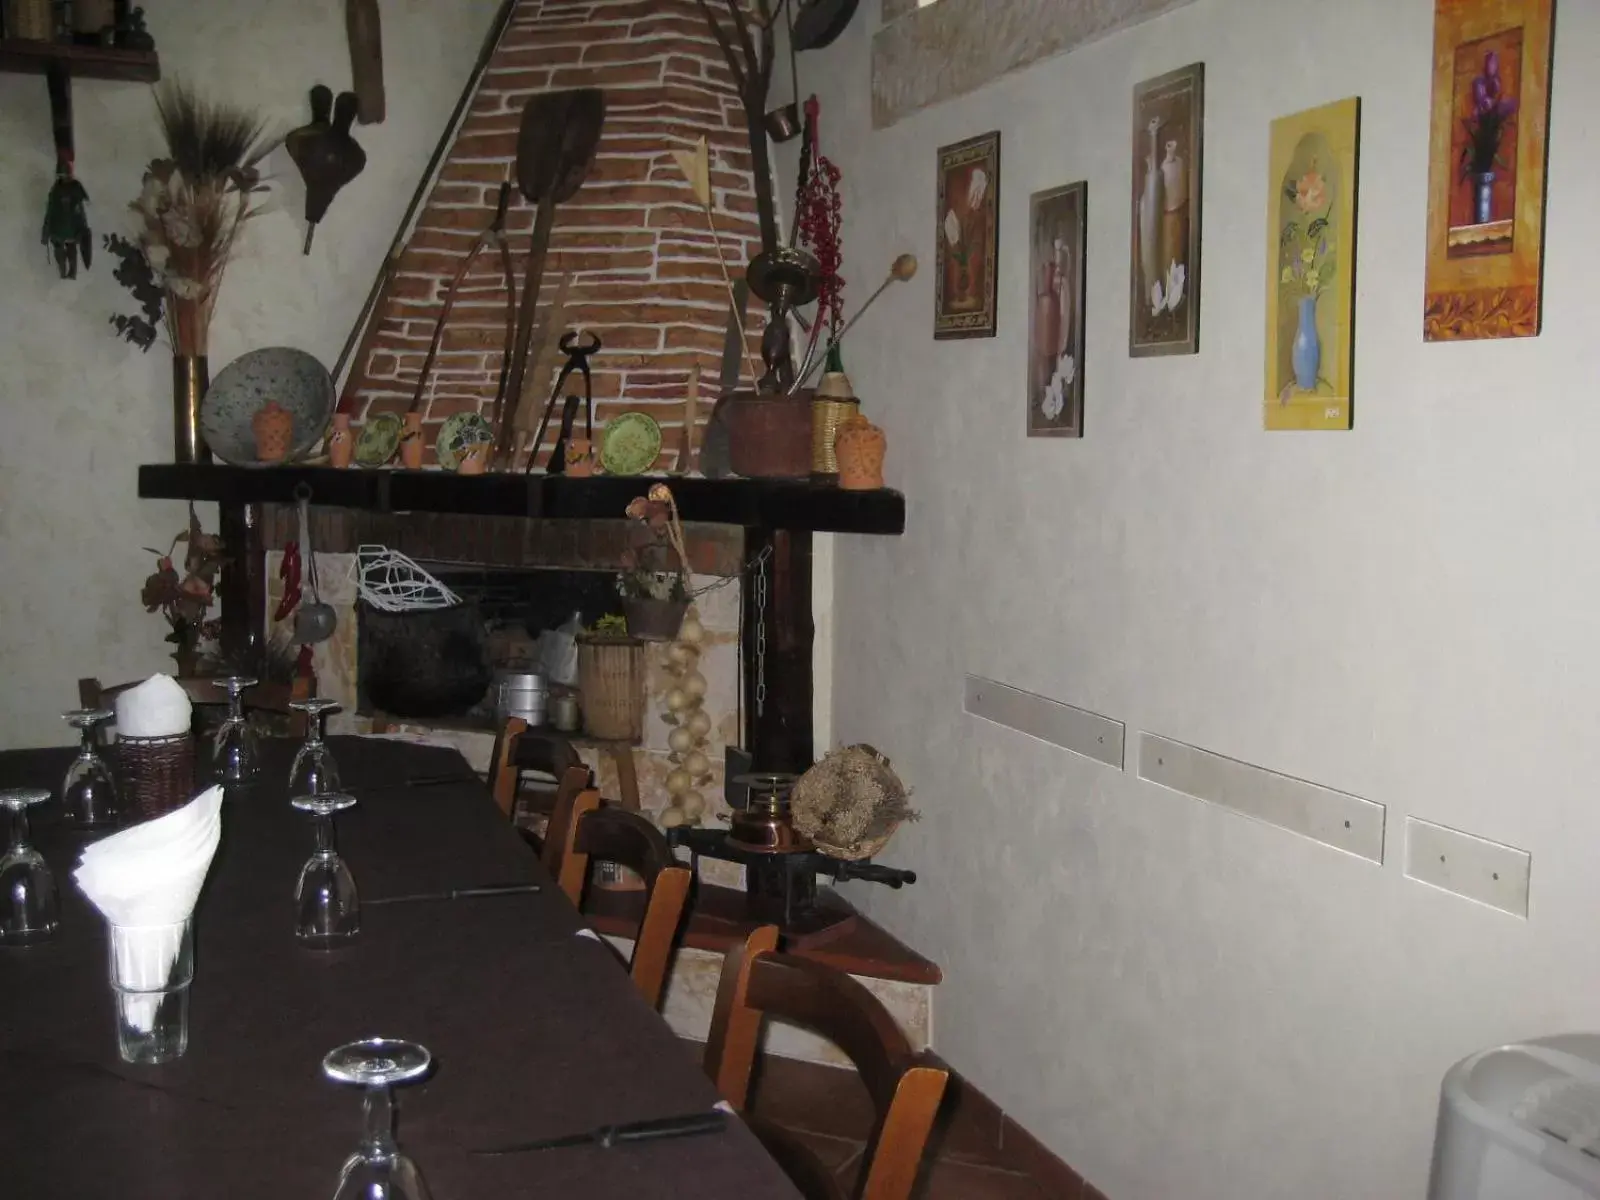 Restaurant/places to eat in Oasi del Lago